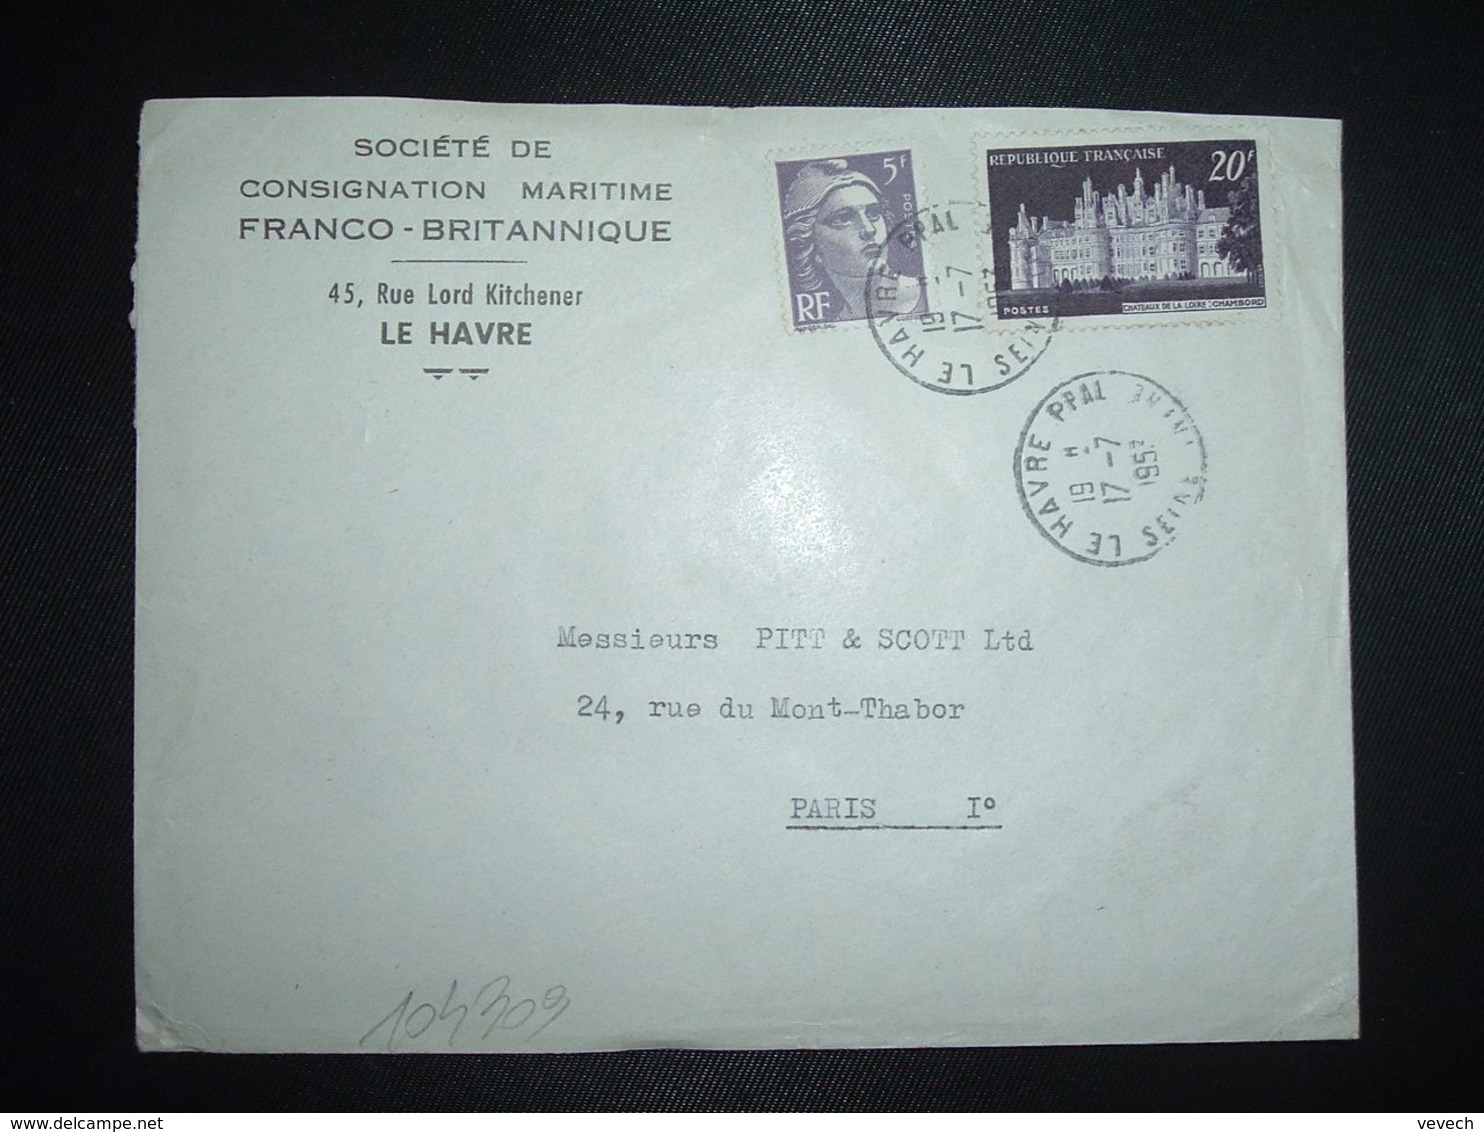 LETTRE TP CHAMBORD 20F + M. DE GANDON 5F OBL.17-7 1953 LE HAVRE PPAL SEINE-INFRE (76) SOCIETE DE CONSIGNATION - Cachets Manuels